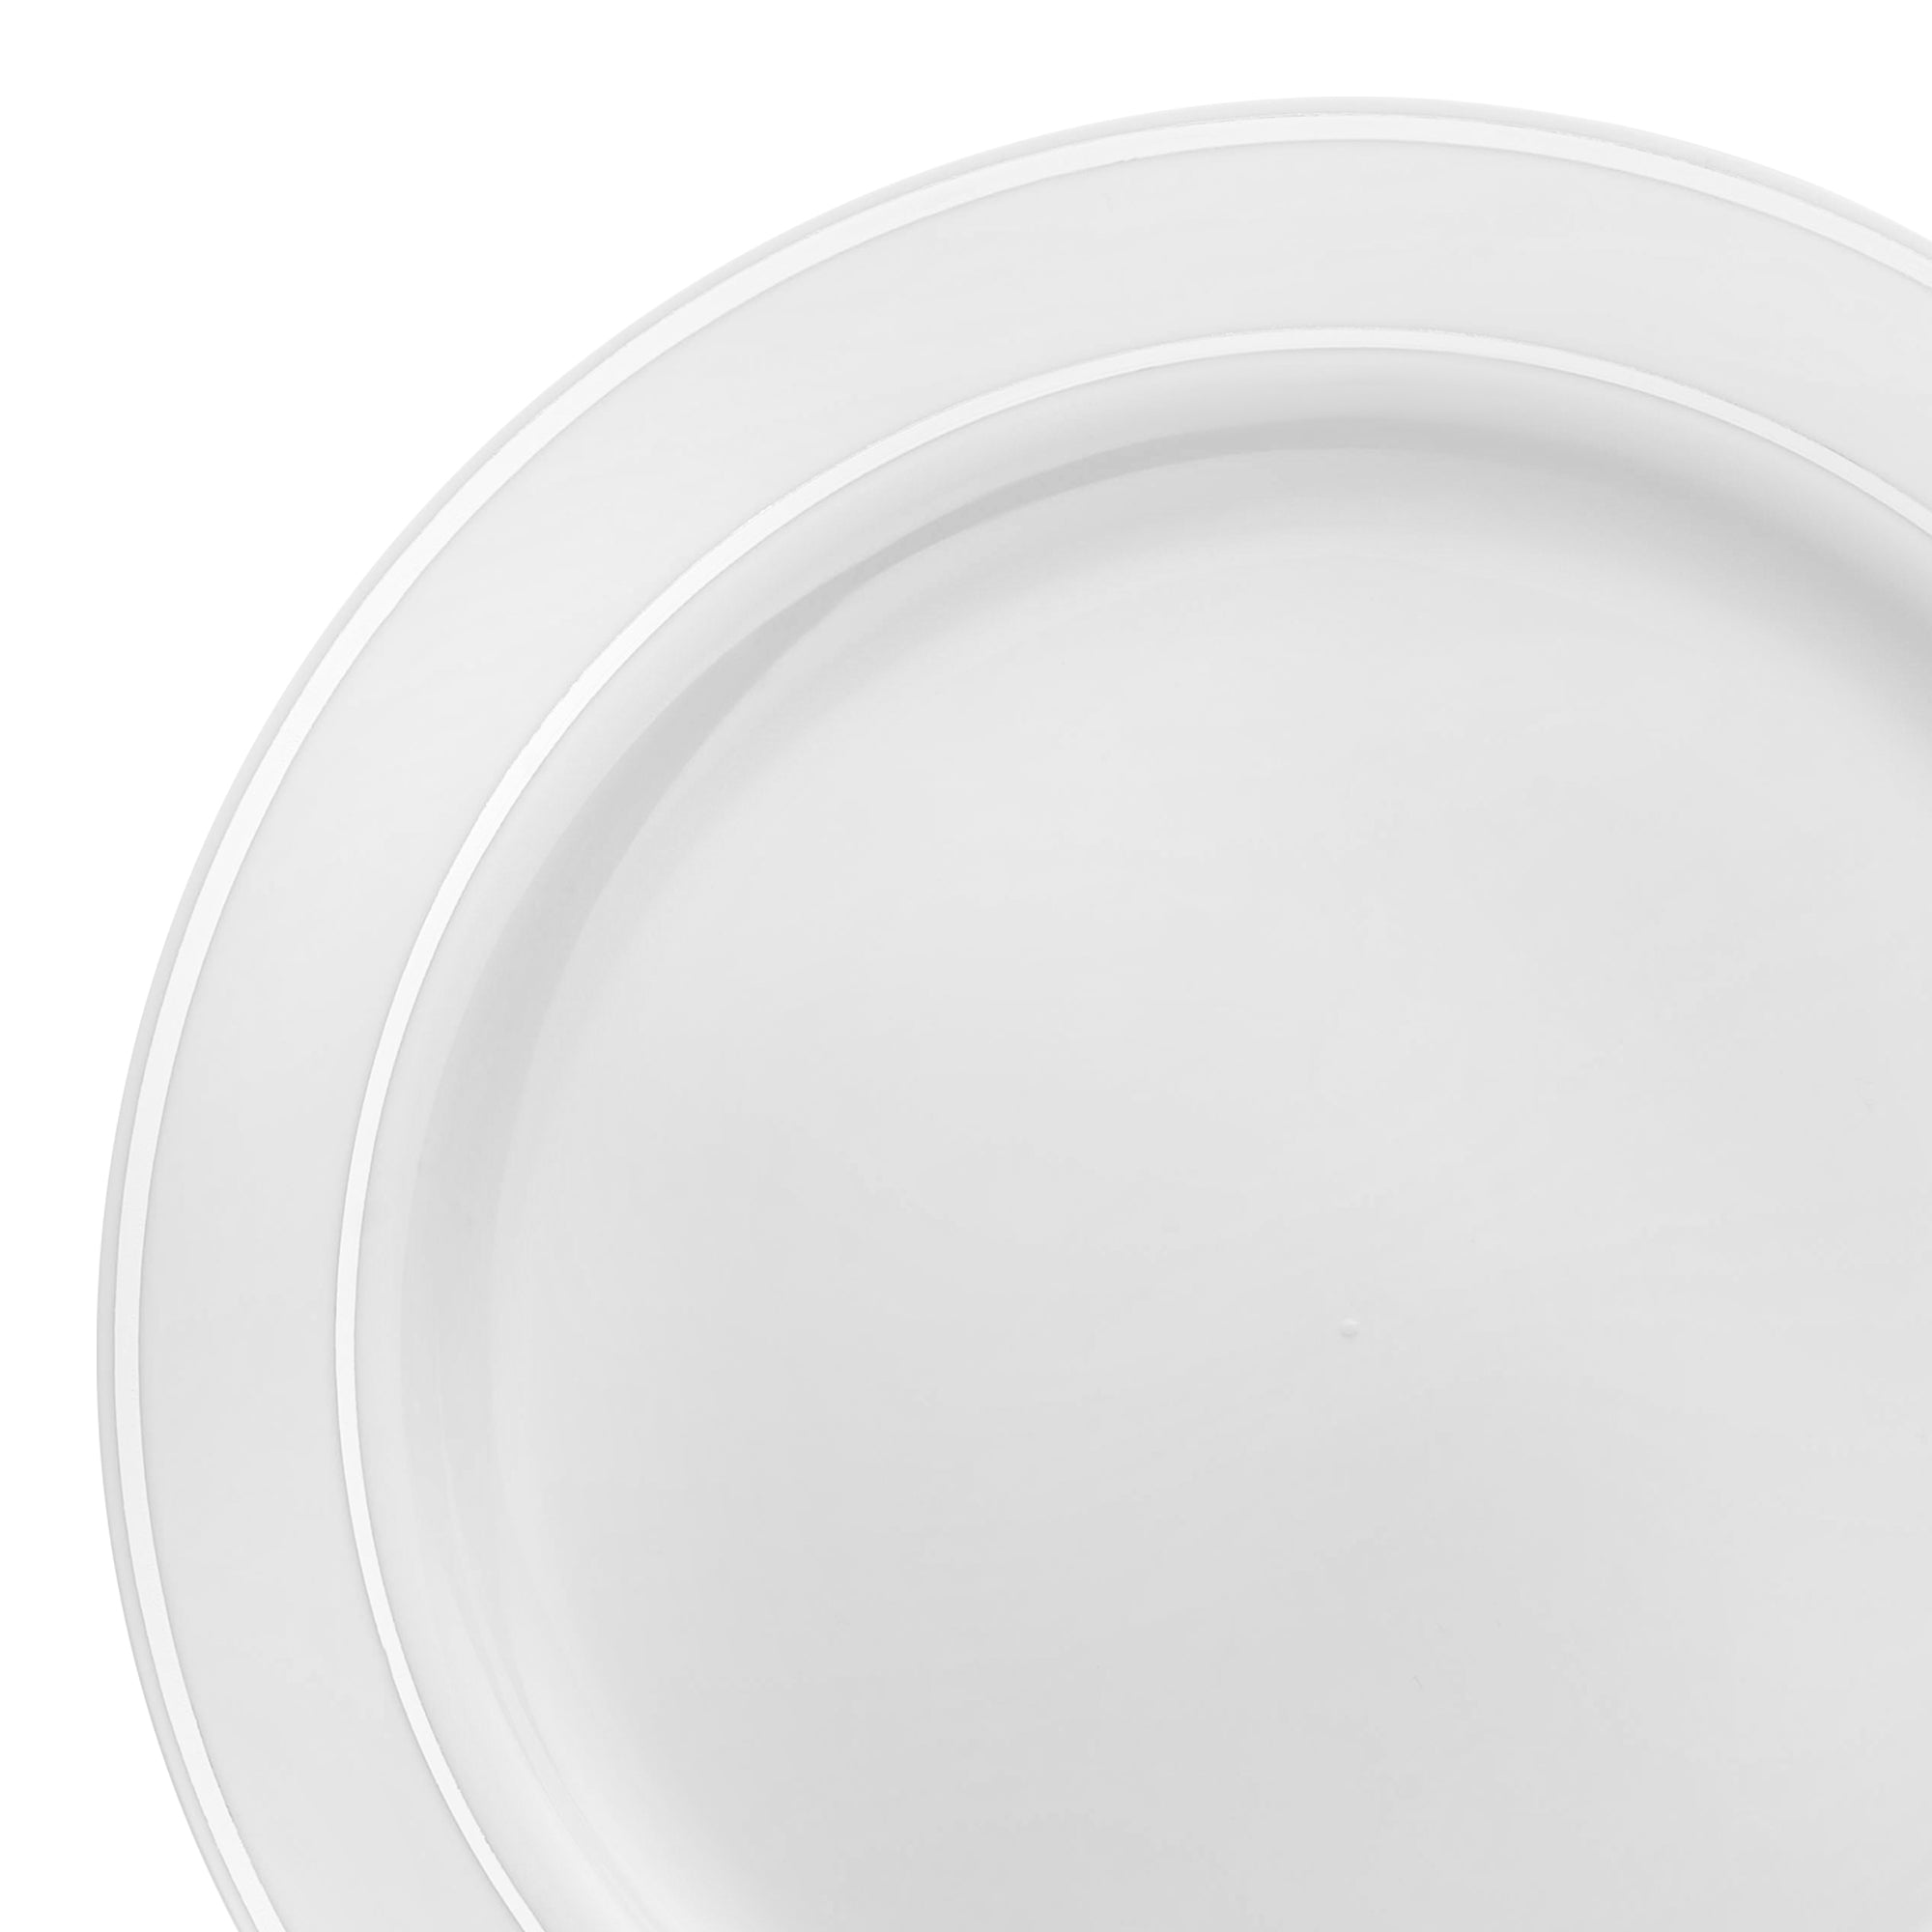 https://cdn.shopify.com/s/files/1/0013/5453/0915/files/White-with-Silver-Edge-Rim-Plastic-Dinner-Plates-Main.jpg?v=1703867731